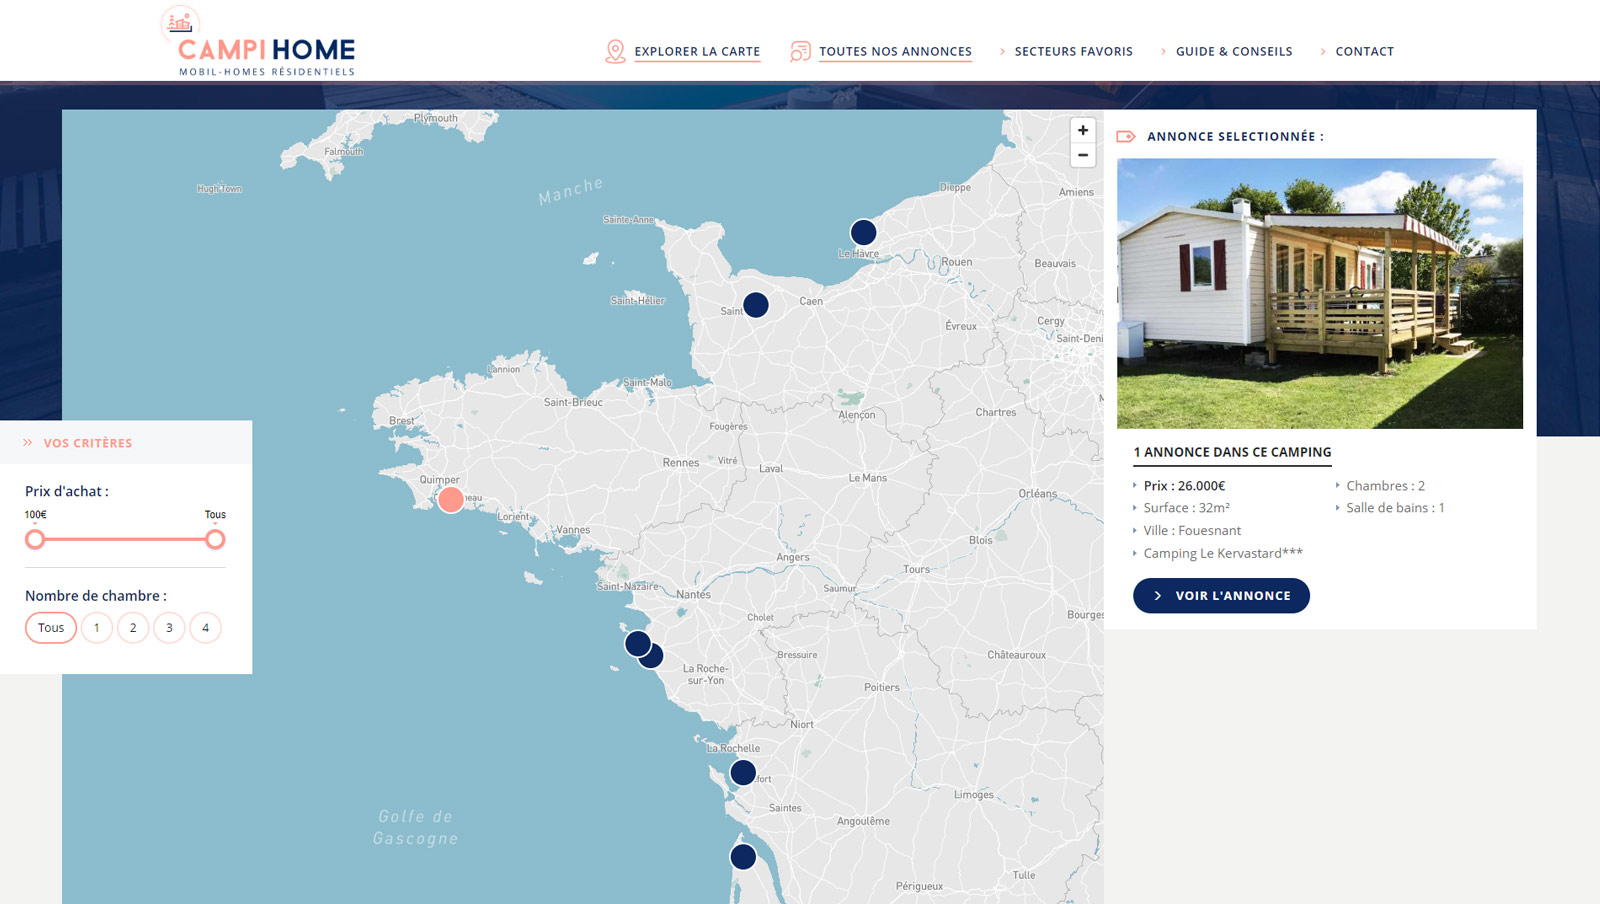 Campihome : création du site internet d'annonces de mobil-home en vente dans des campings, Hervé Augoyat